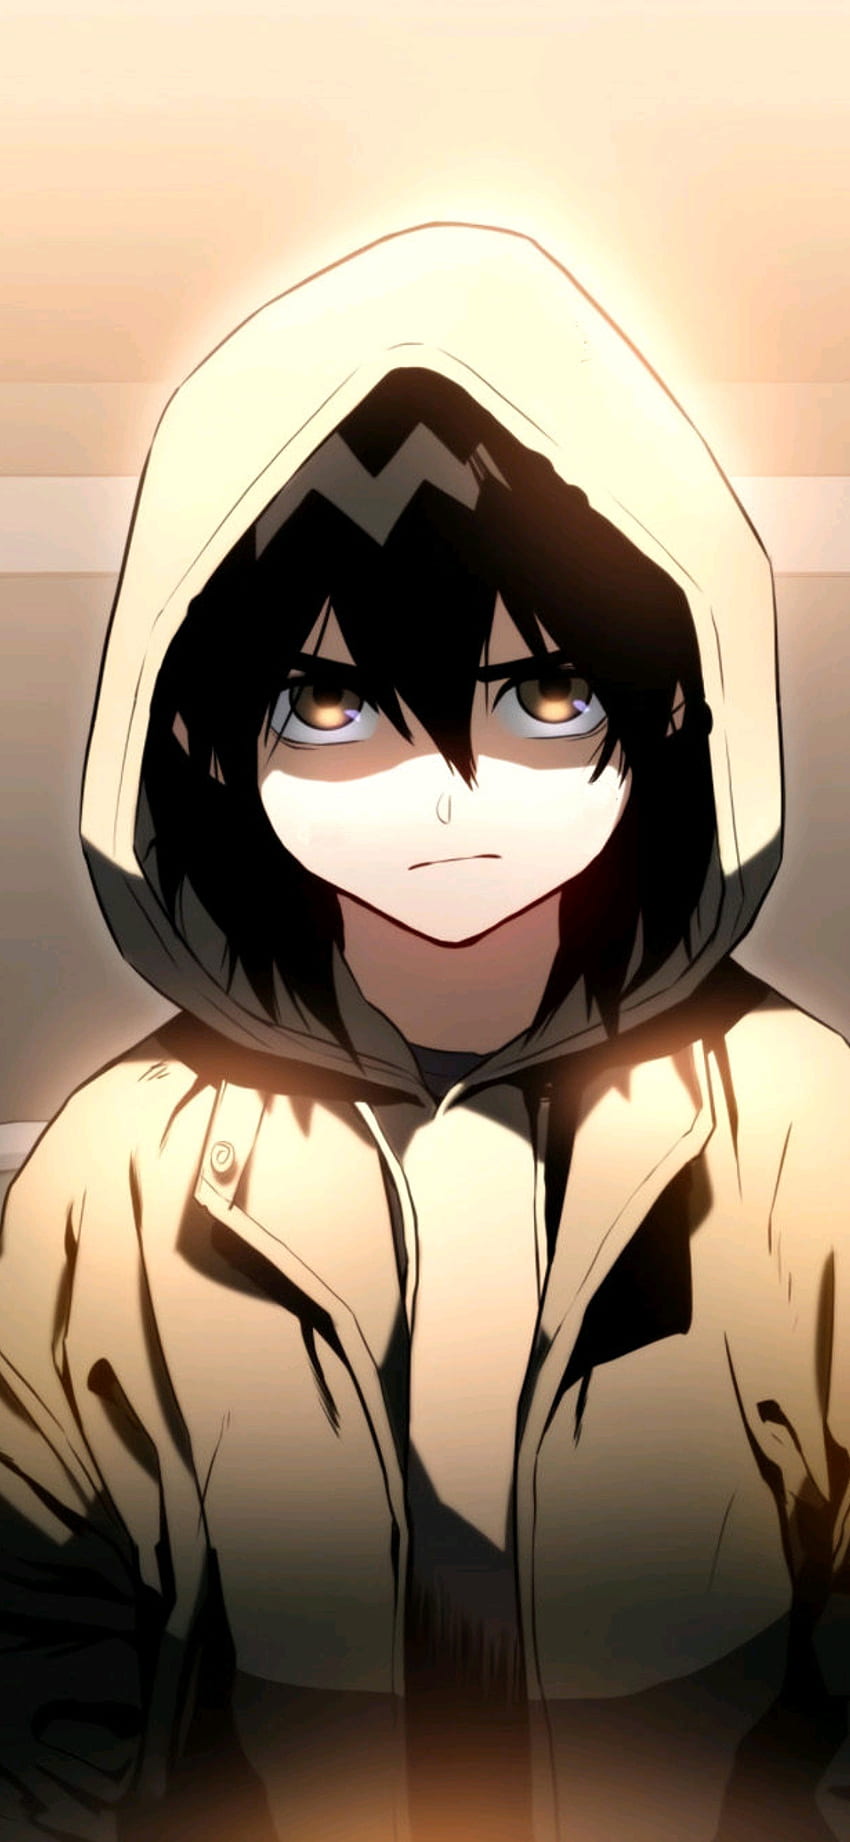 Cabeça masculina - Anime - Boy foto perfil